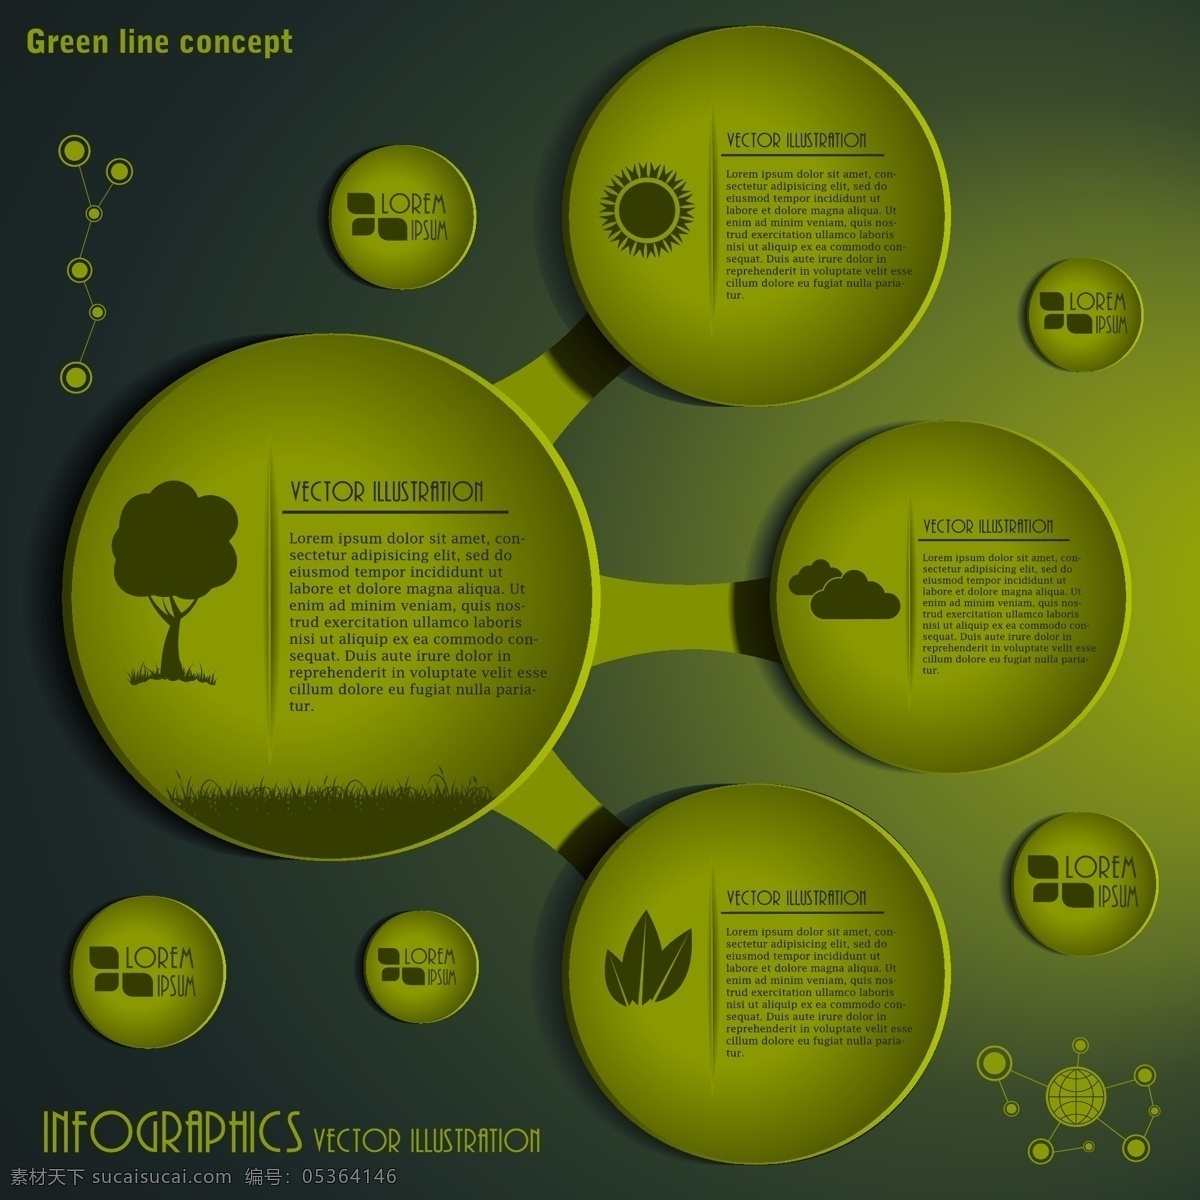 绿色 有机 环保 信息 图表 绿色有机 环保信息图表 矢量标签 矢量图表 网页标签 办公学习 生活百科 矢量素材 黄色